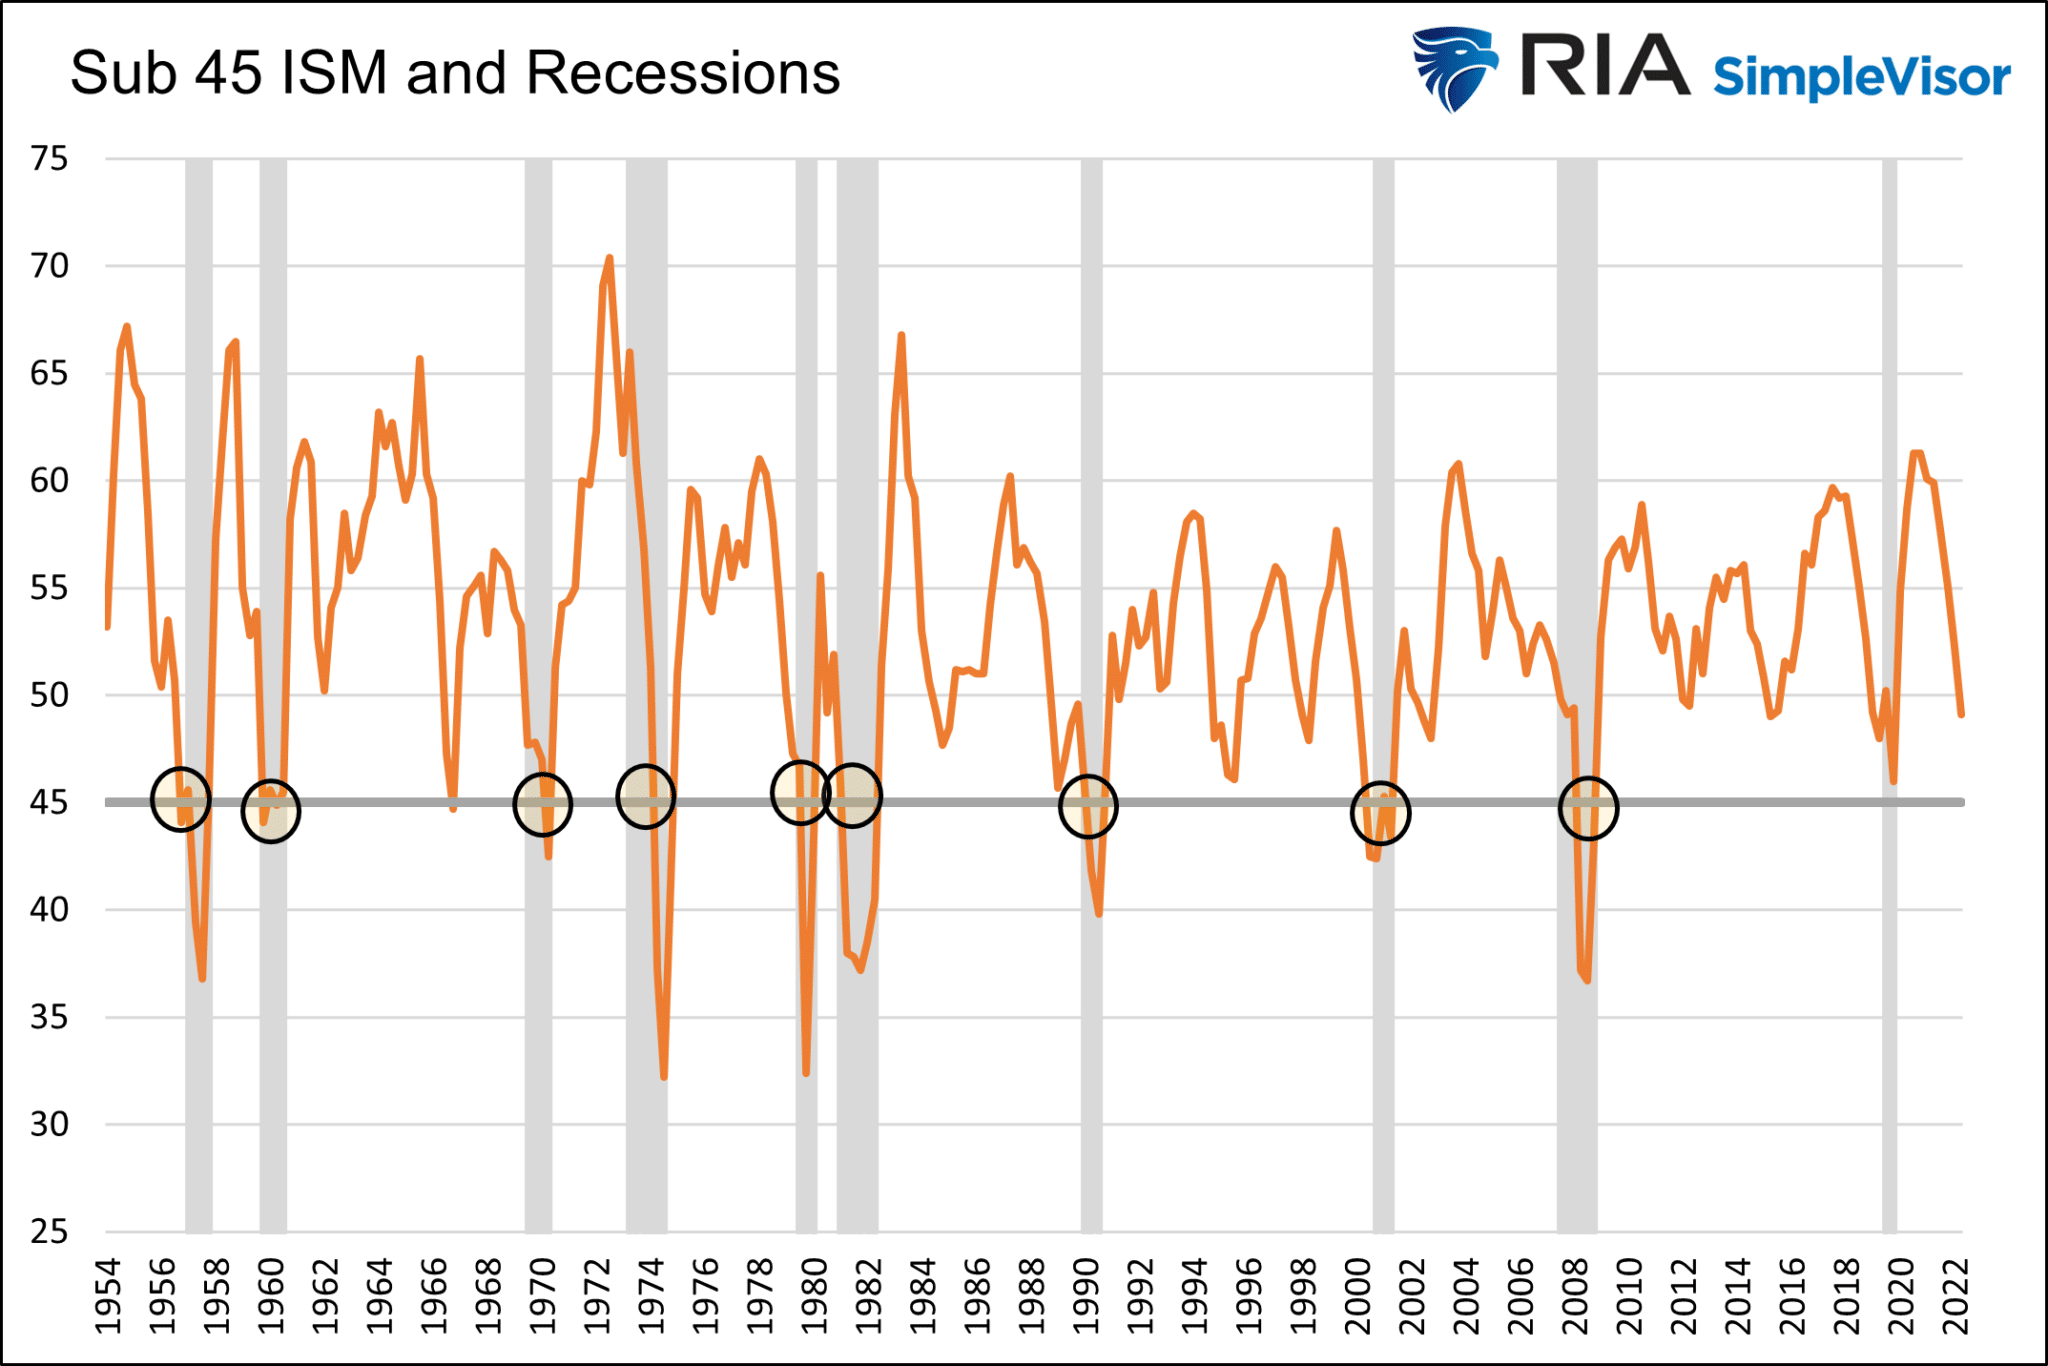 Значения индекса ISM ниже 45 и рецессии